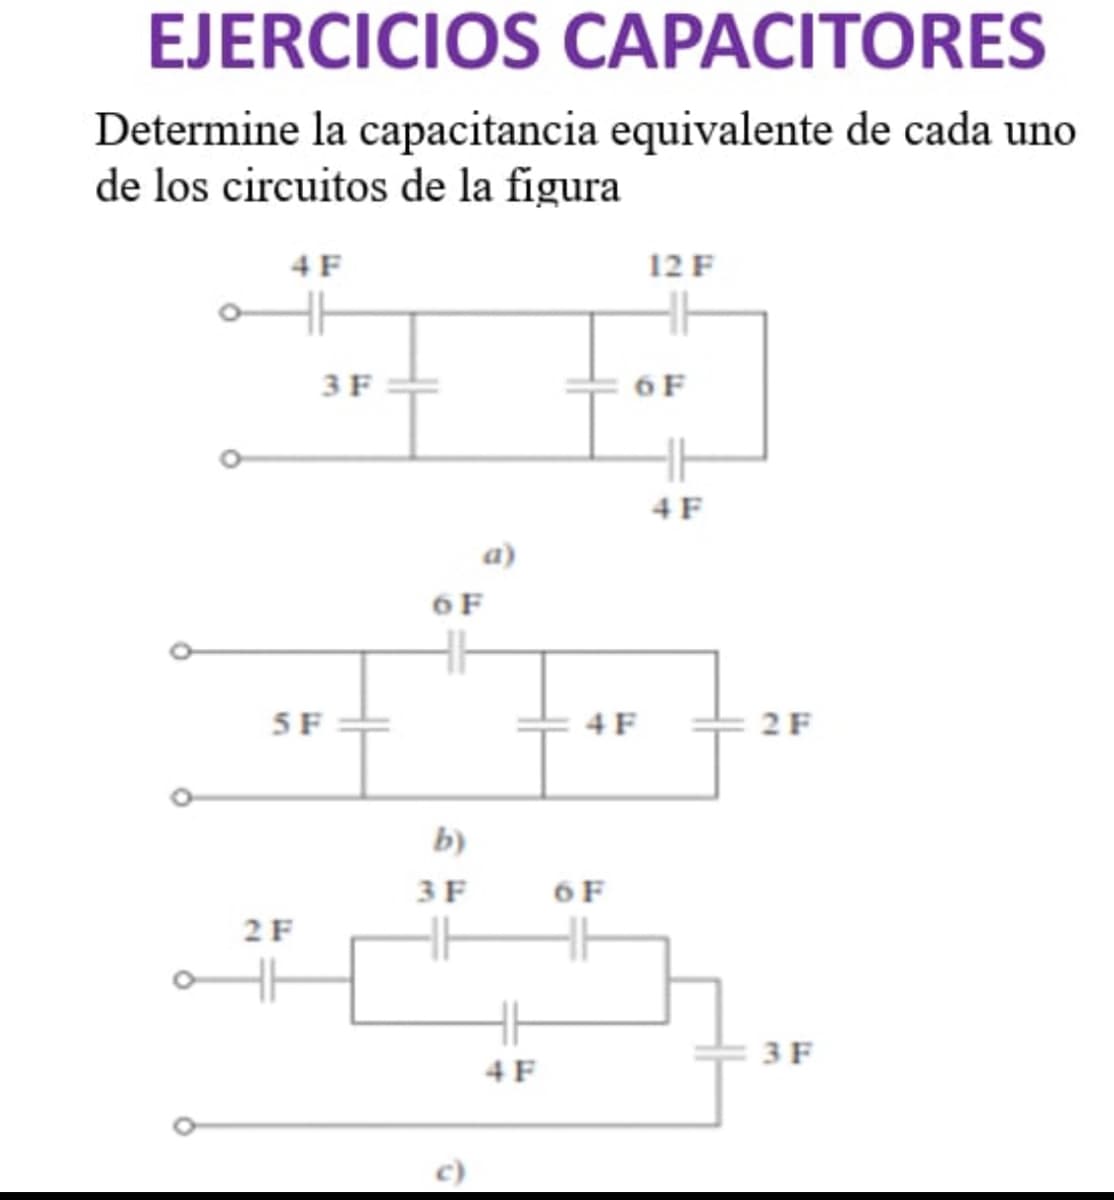 EJERCICIOS CAPACITORES
Determine la capacitancia equivalente de cada uno
de los circuitos de la figura
4 F
3 F
5 F
2 F
6 F
b)
3 F
HH
4 F
4F
6 F
12 F
6 F
4F
2 F
3F